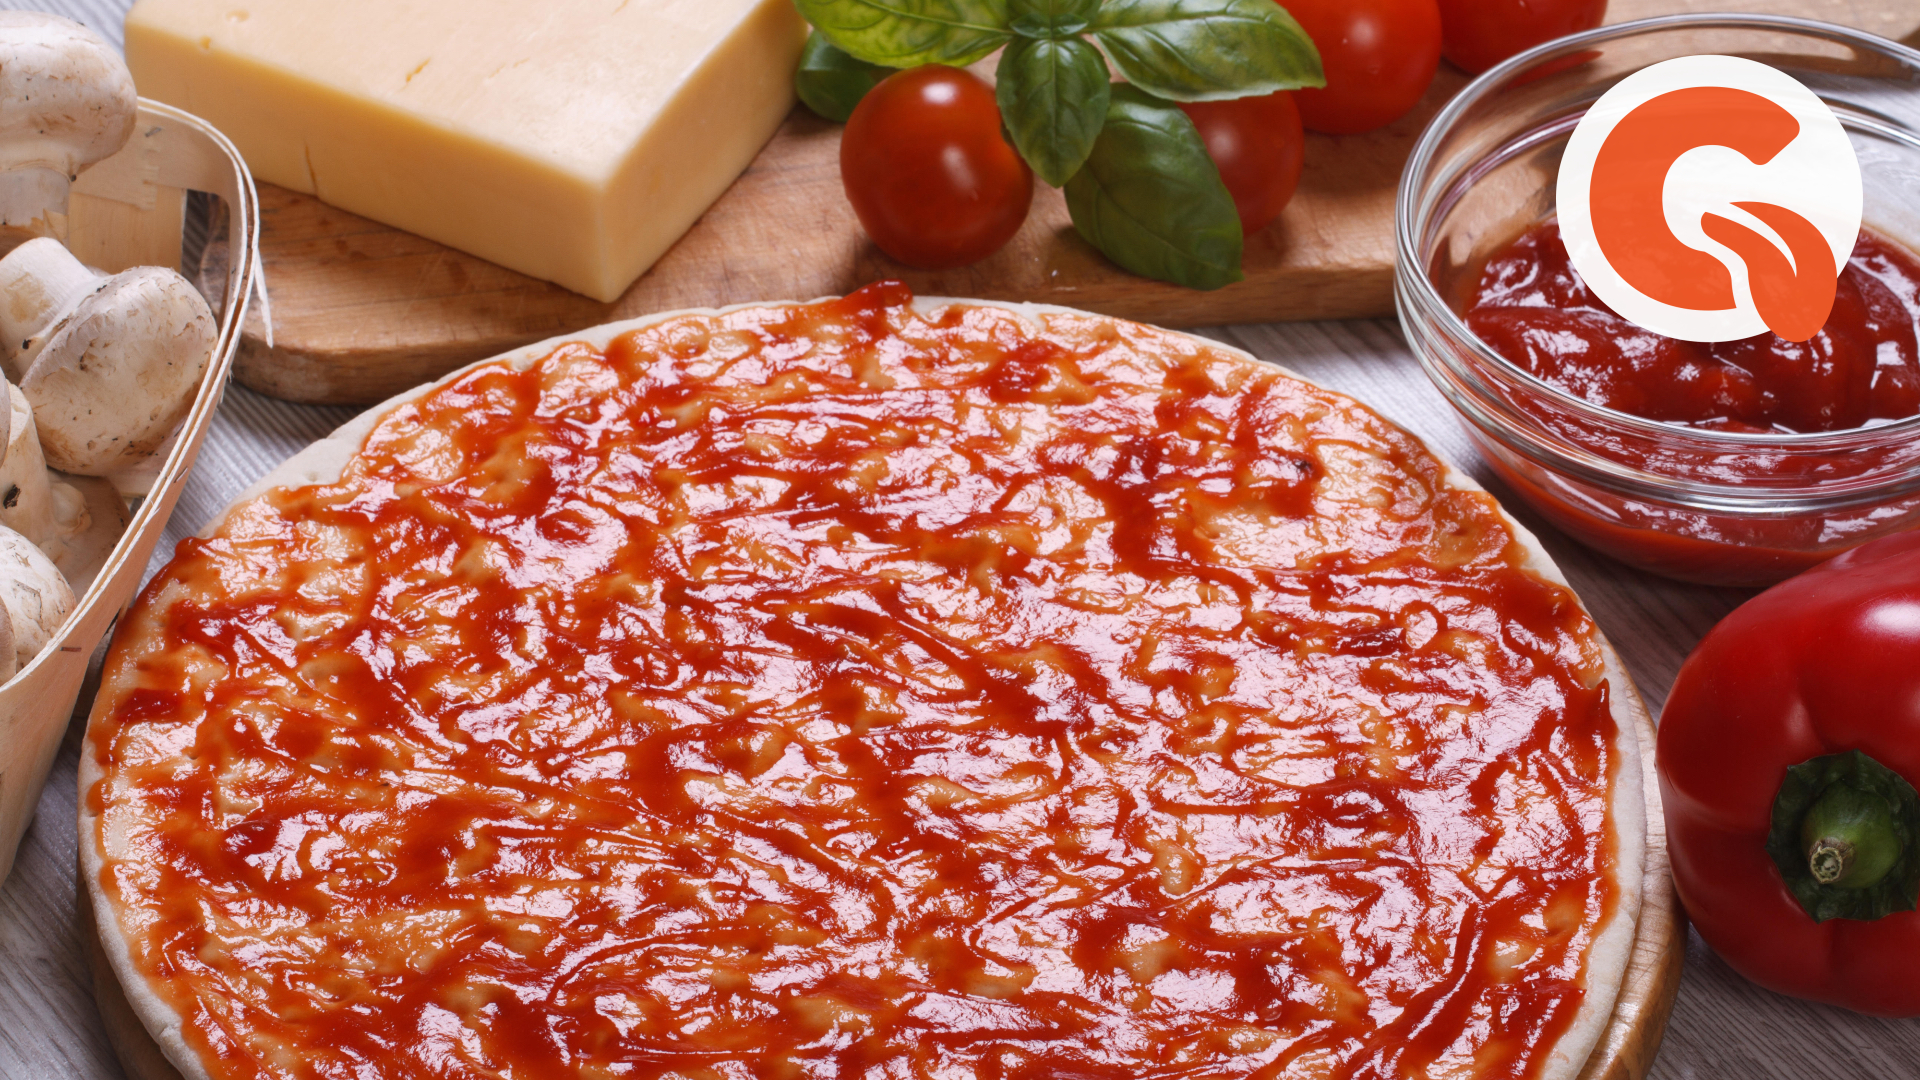 томатный соус для пиццы в домашних условиях на зиму фото 10